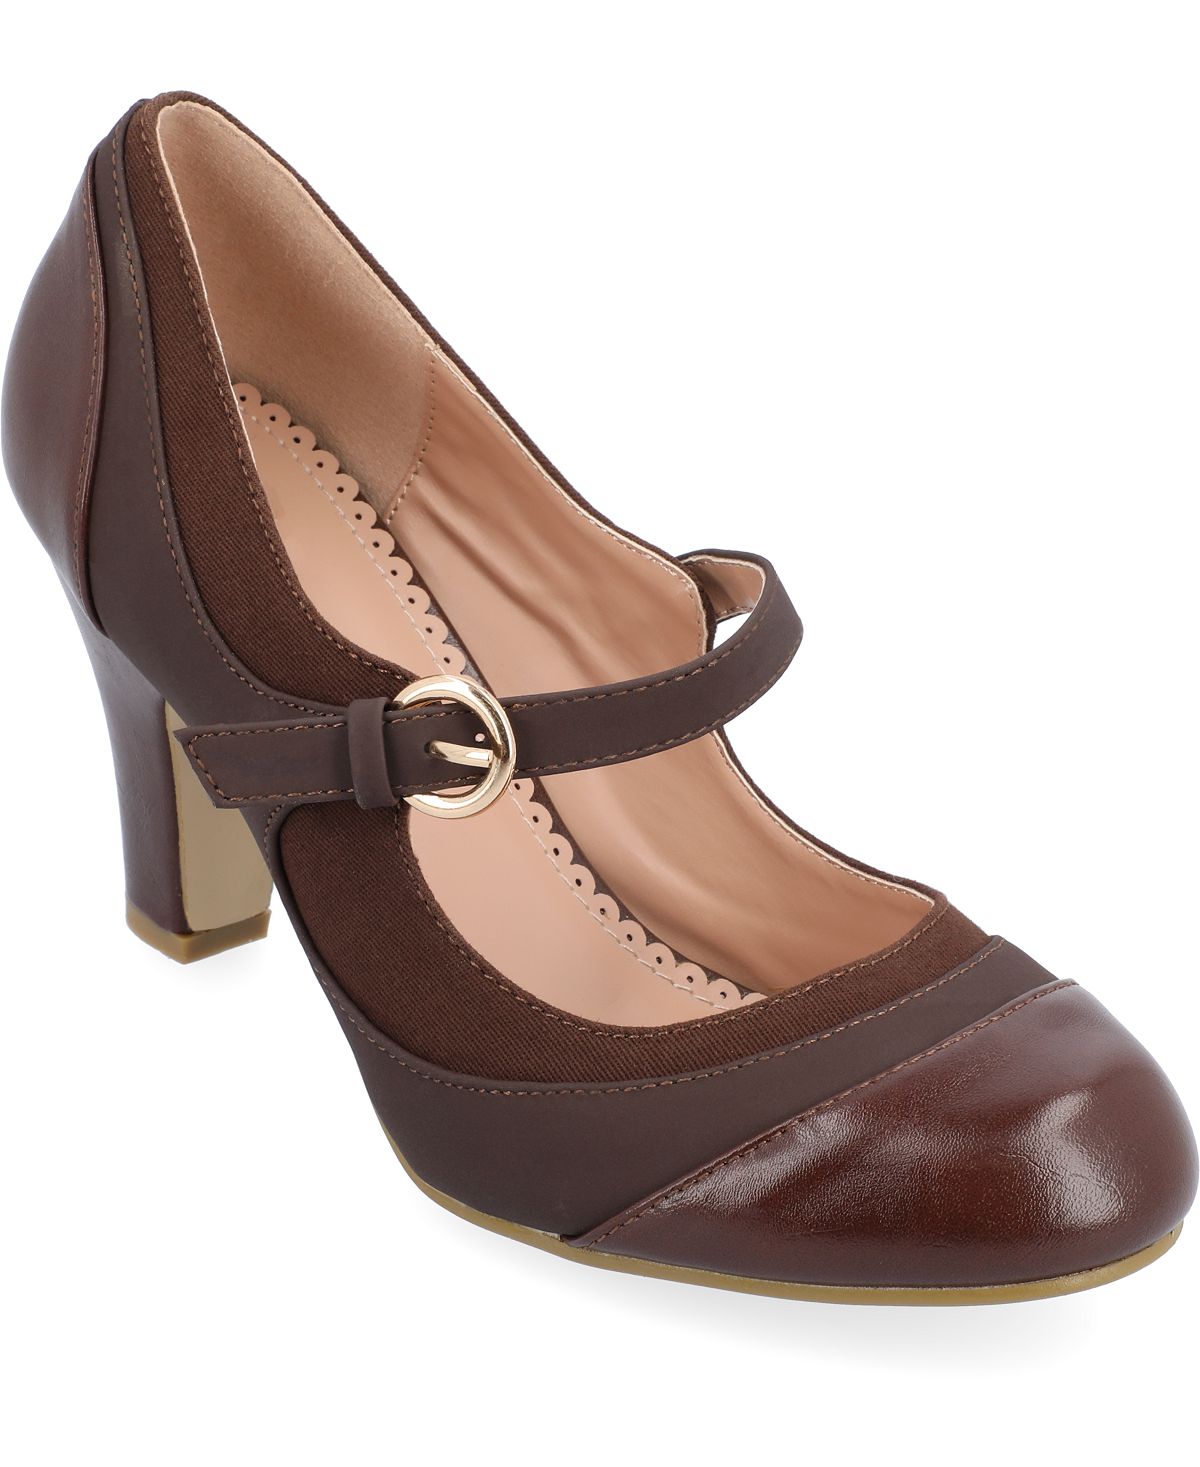 Женские твидовые туфли на каблуке с пряжкой Siri Journee Collection, коричневый